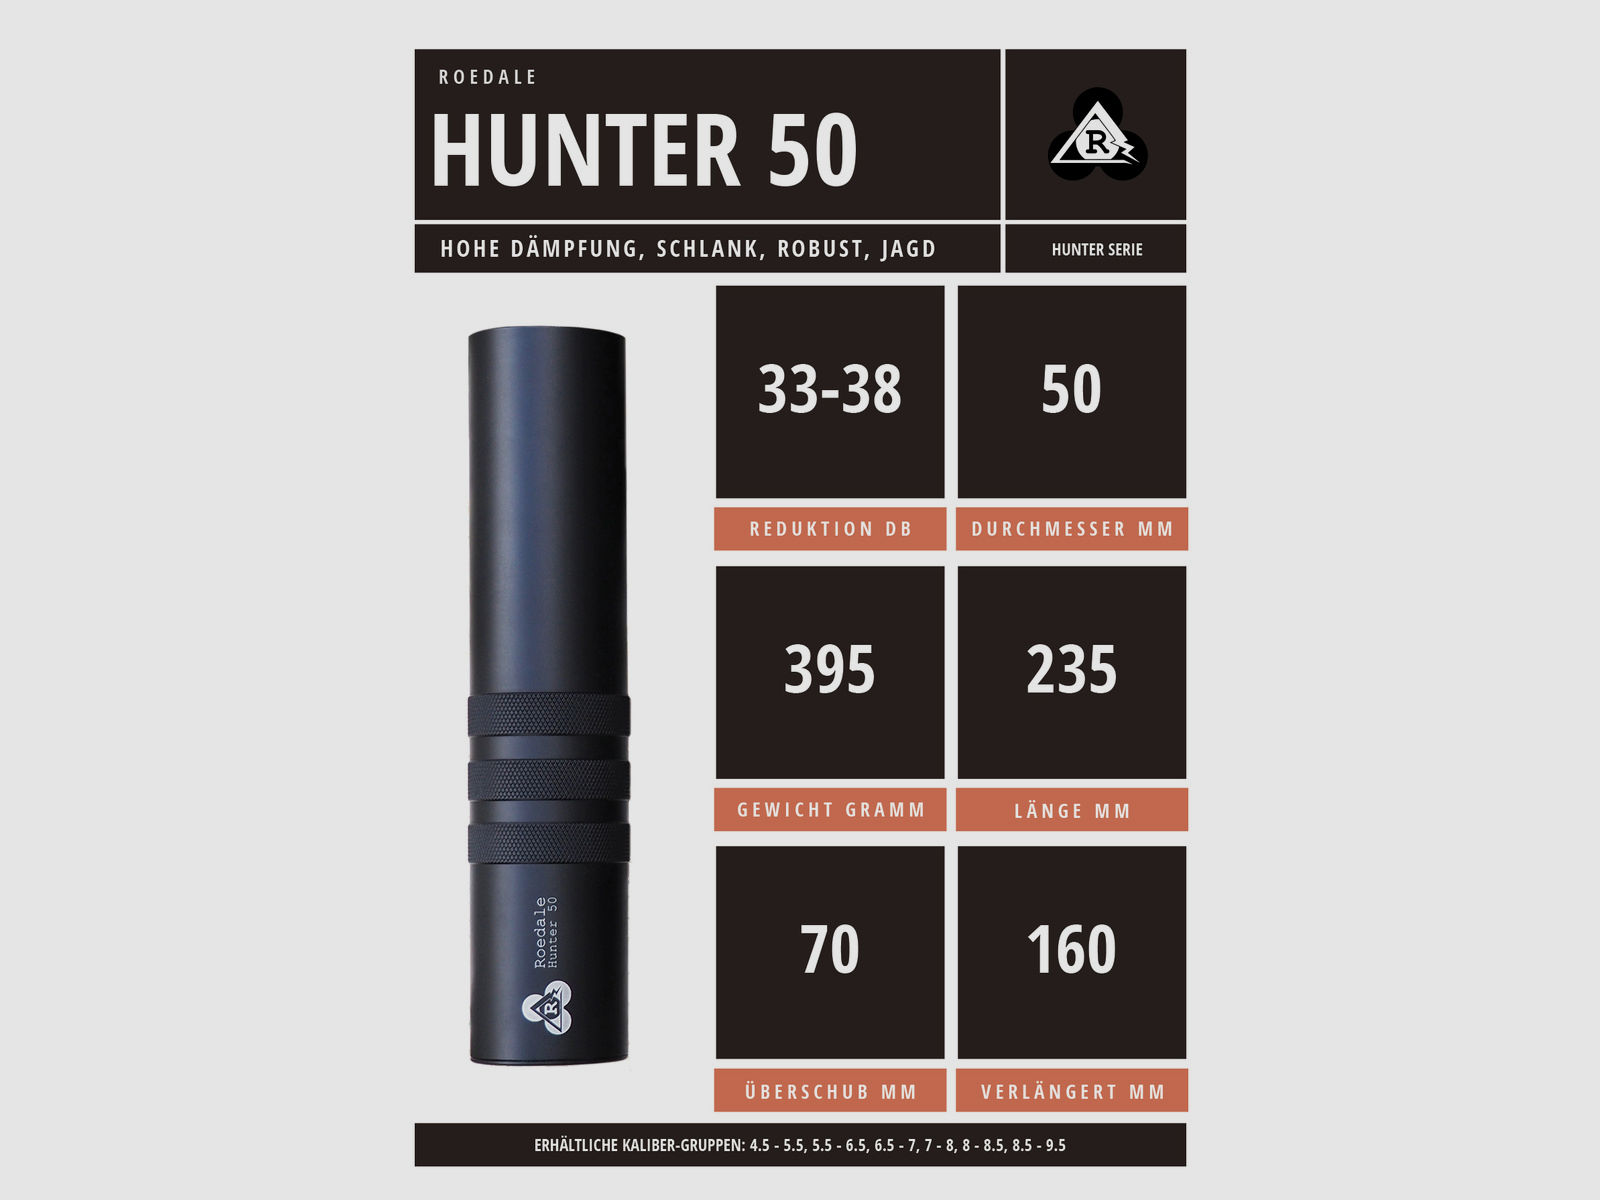 Schalldämpfer Roedale Hunter 50